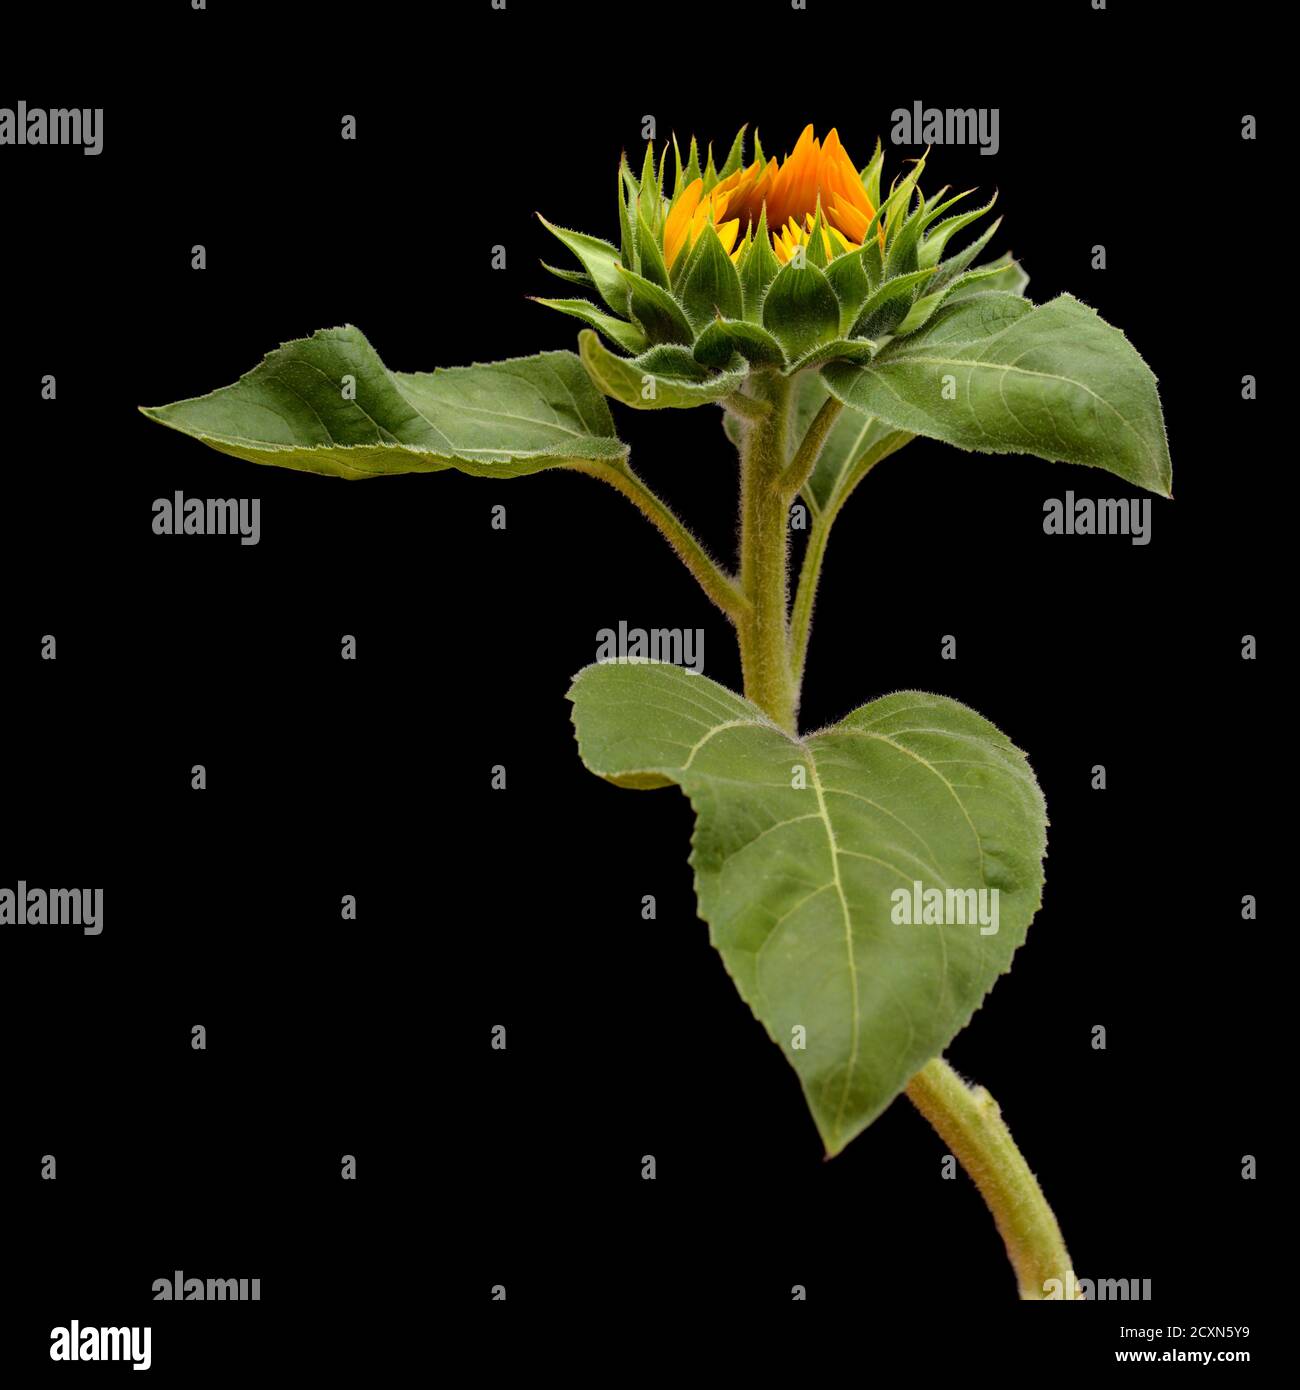 Unopened sunflower isolated on black background Stock Photo